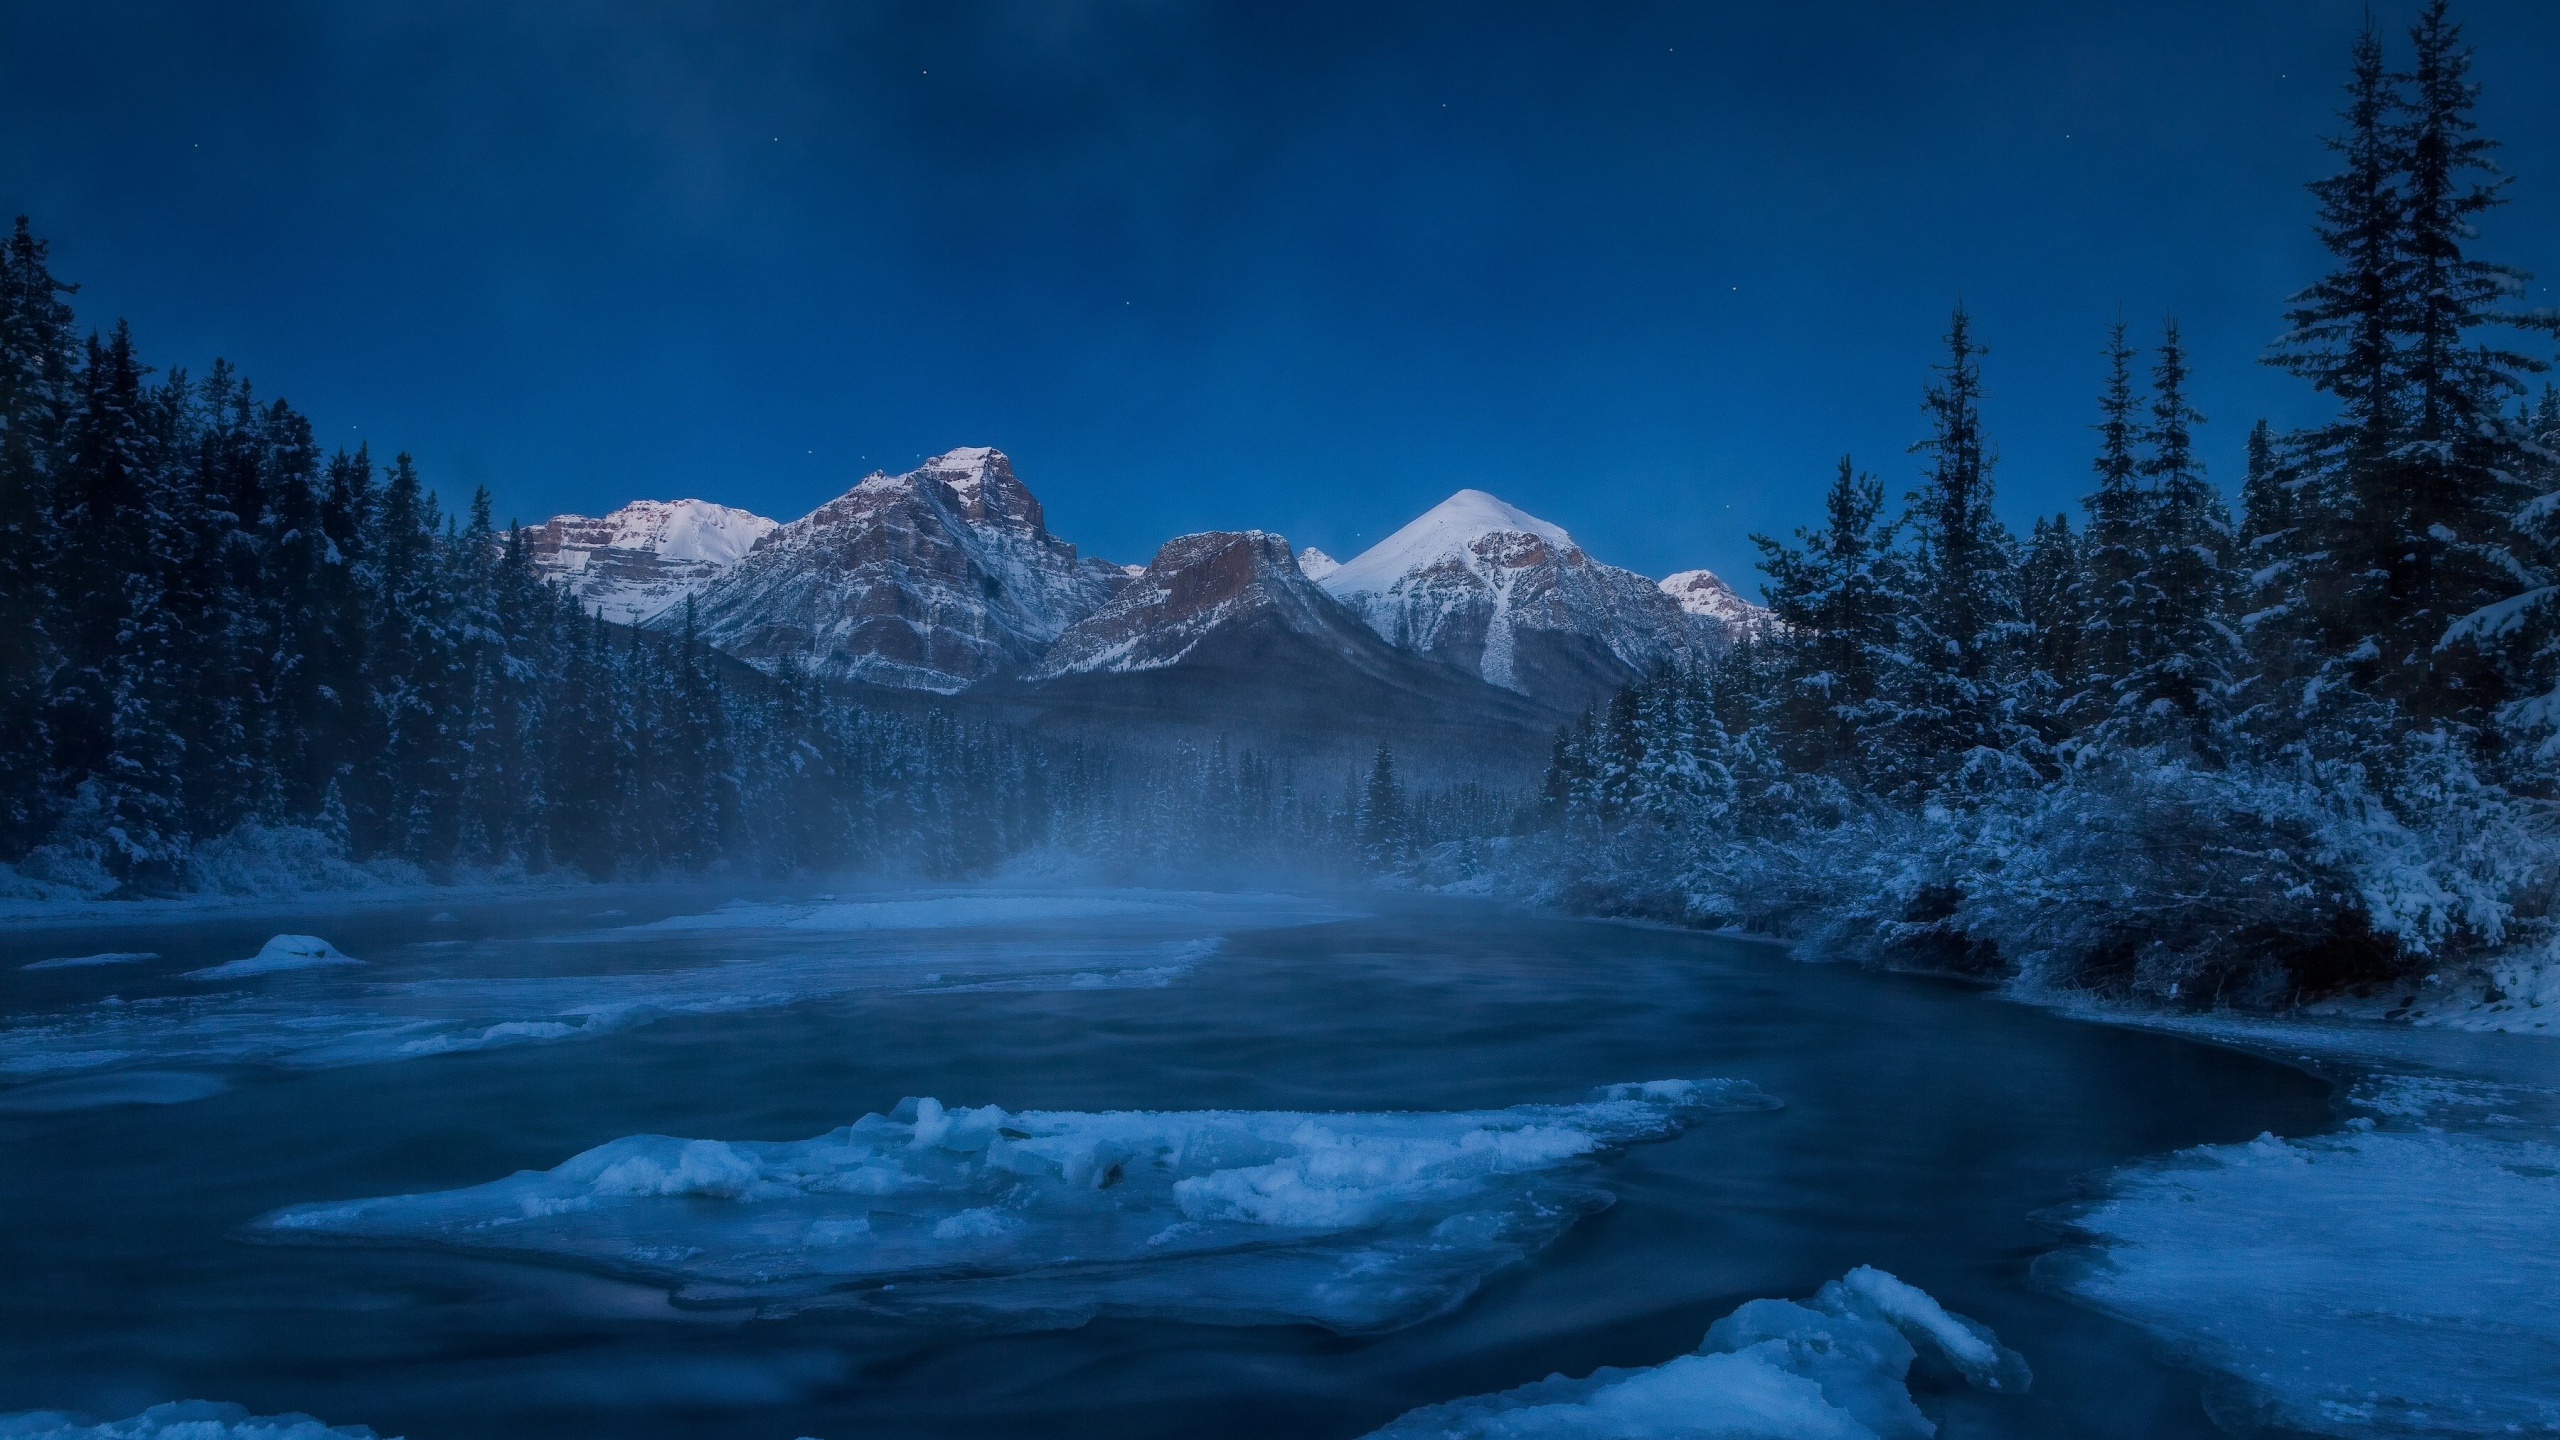 Montaña Cubierta de Nieve Bajo un Cielo Azul Durante el Día. Wallpaper in 2560x1440 Resolution